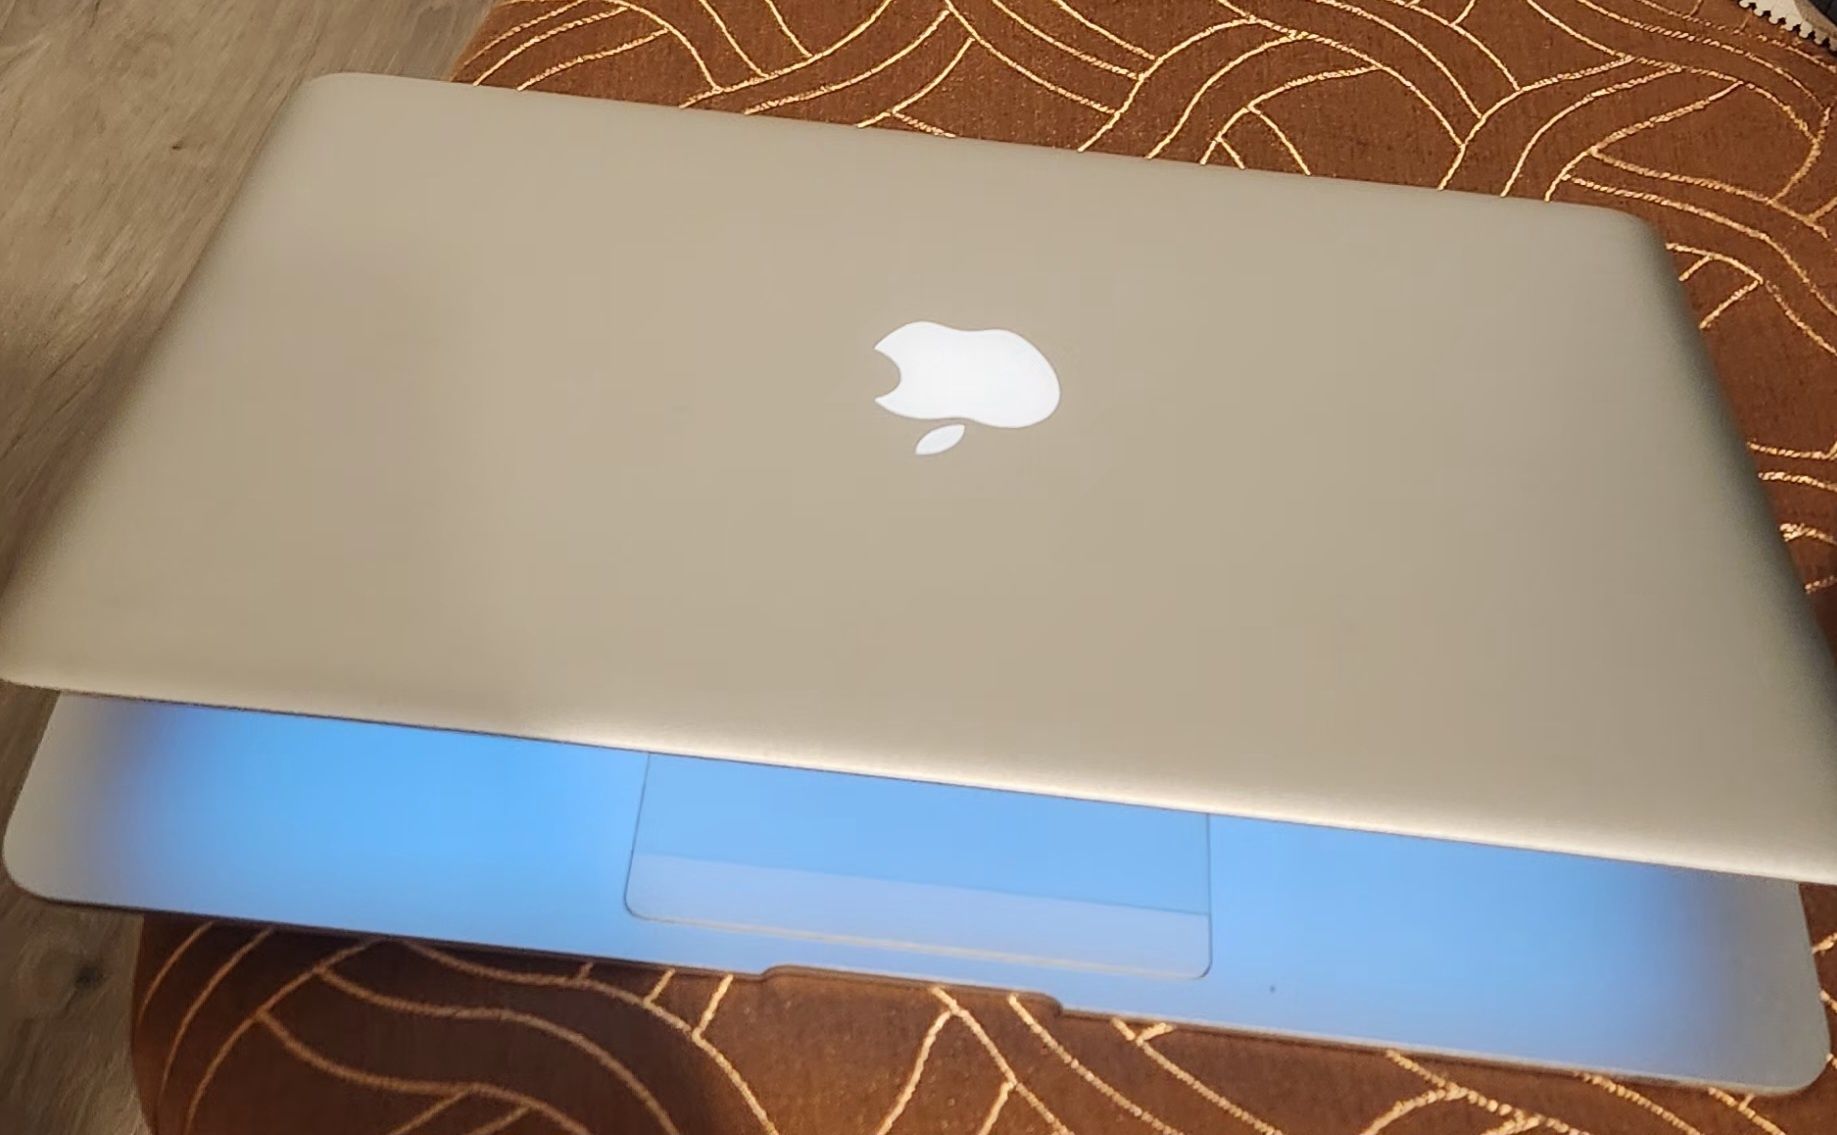 Macbook Air super slim